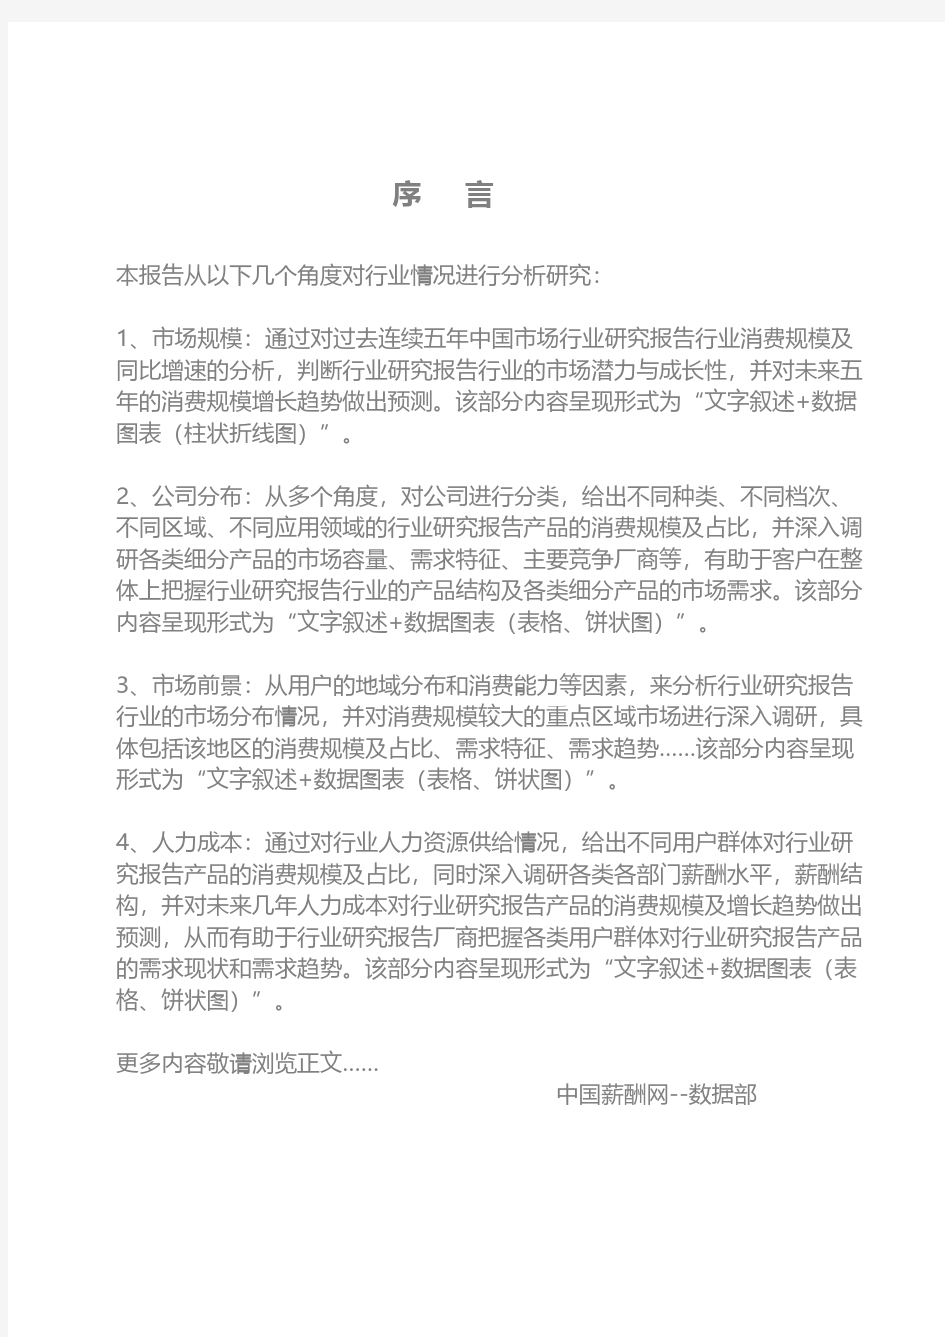 2019年福建漳州古雷港经济开发区投资环境报告